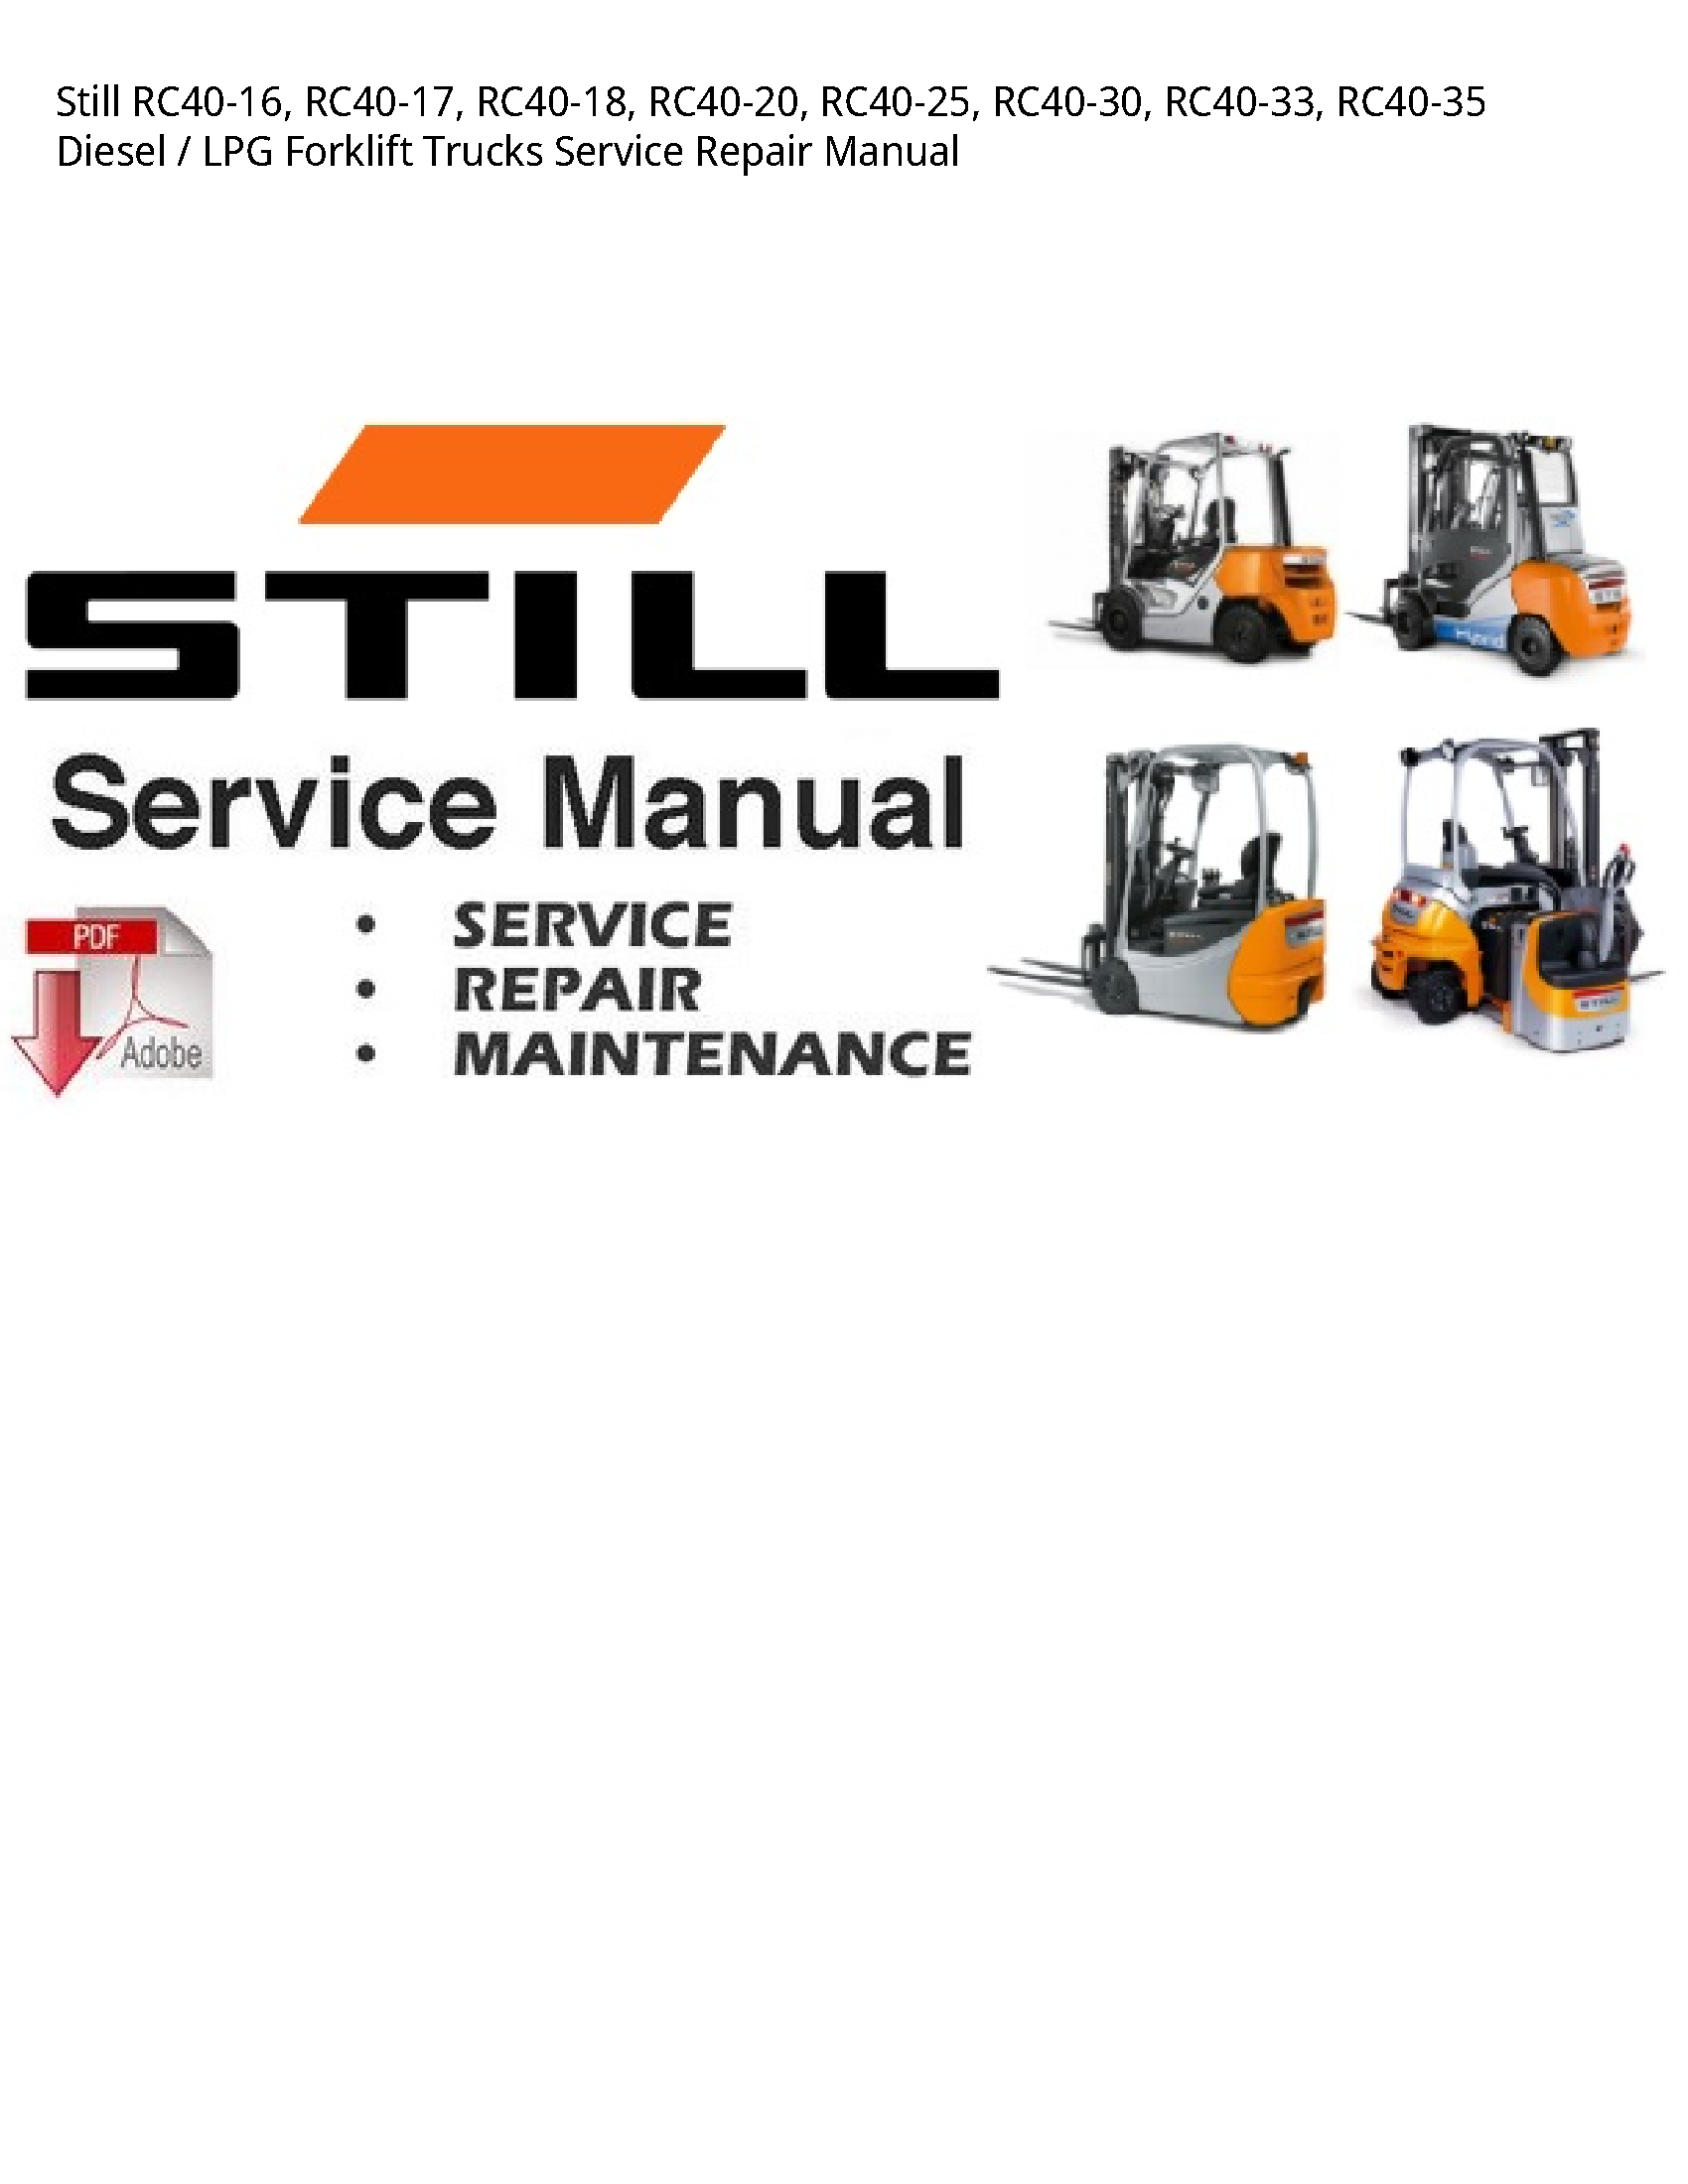 Still RC40-16 Diesel LPG Forklift Trucks manual